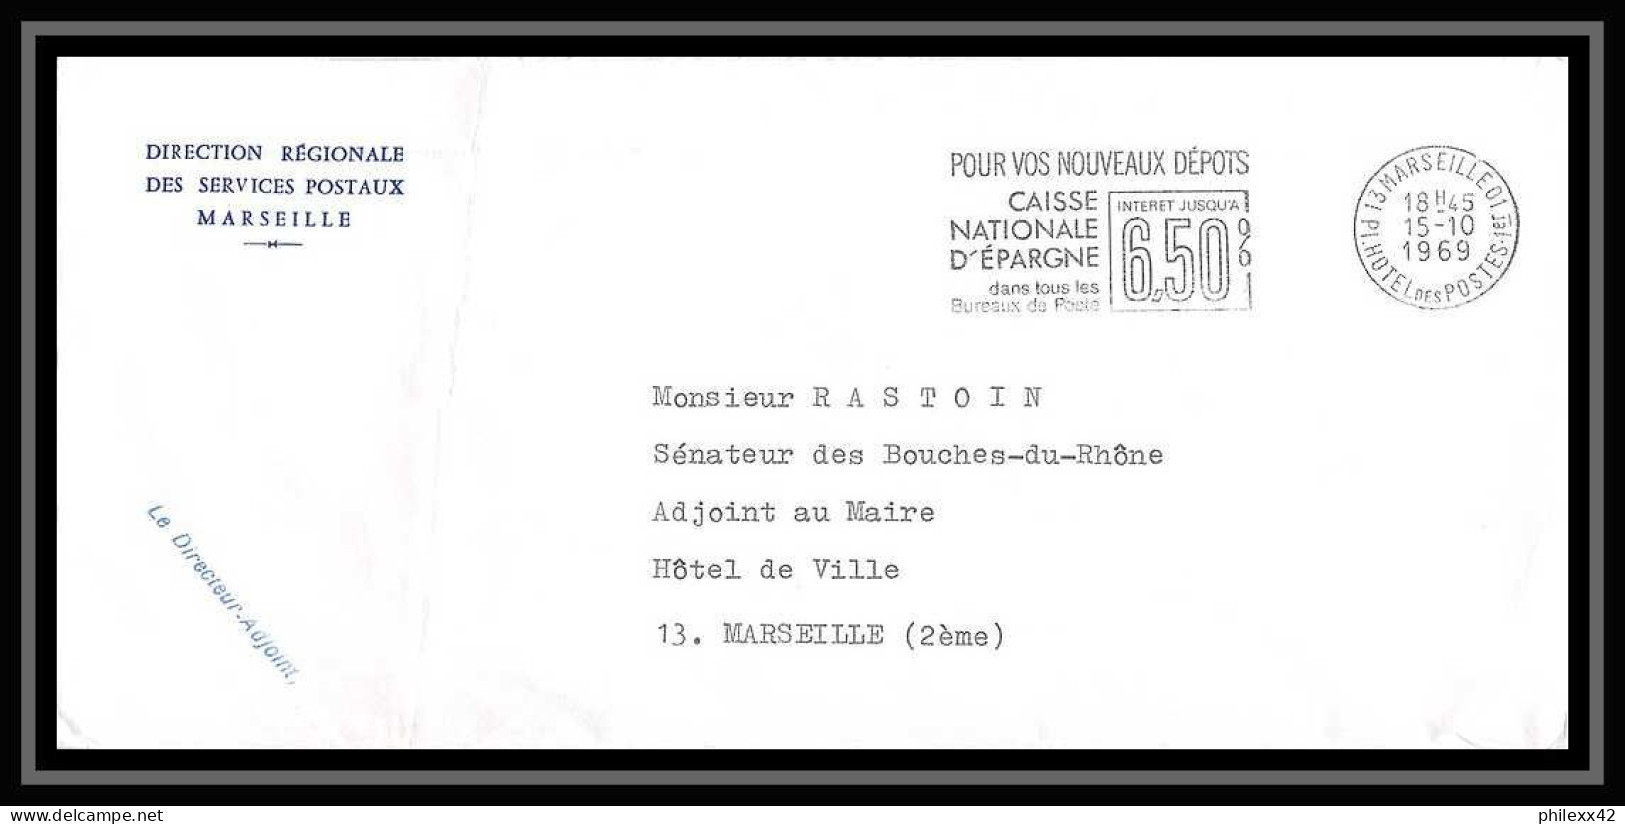 116364 lot de 14 Lettres cover Bouches du rhone flammes diverses Marseille Hotel des postes